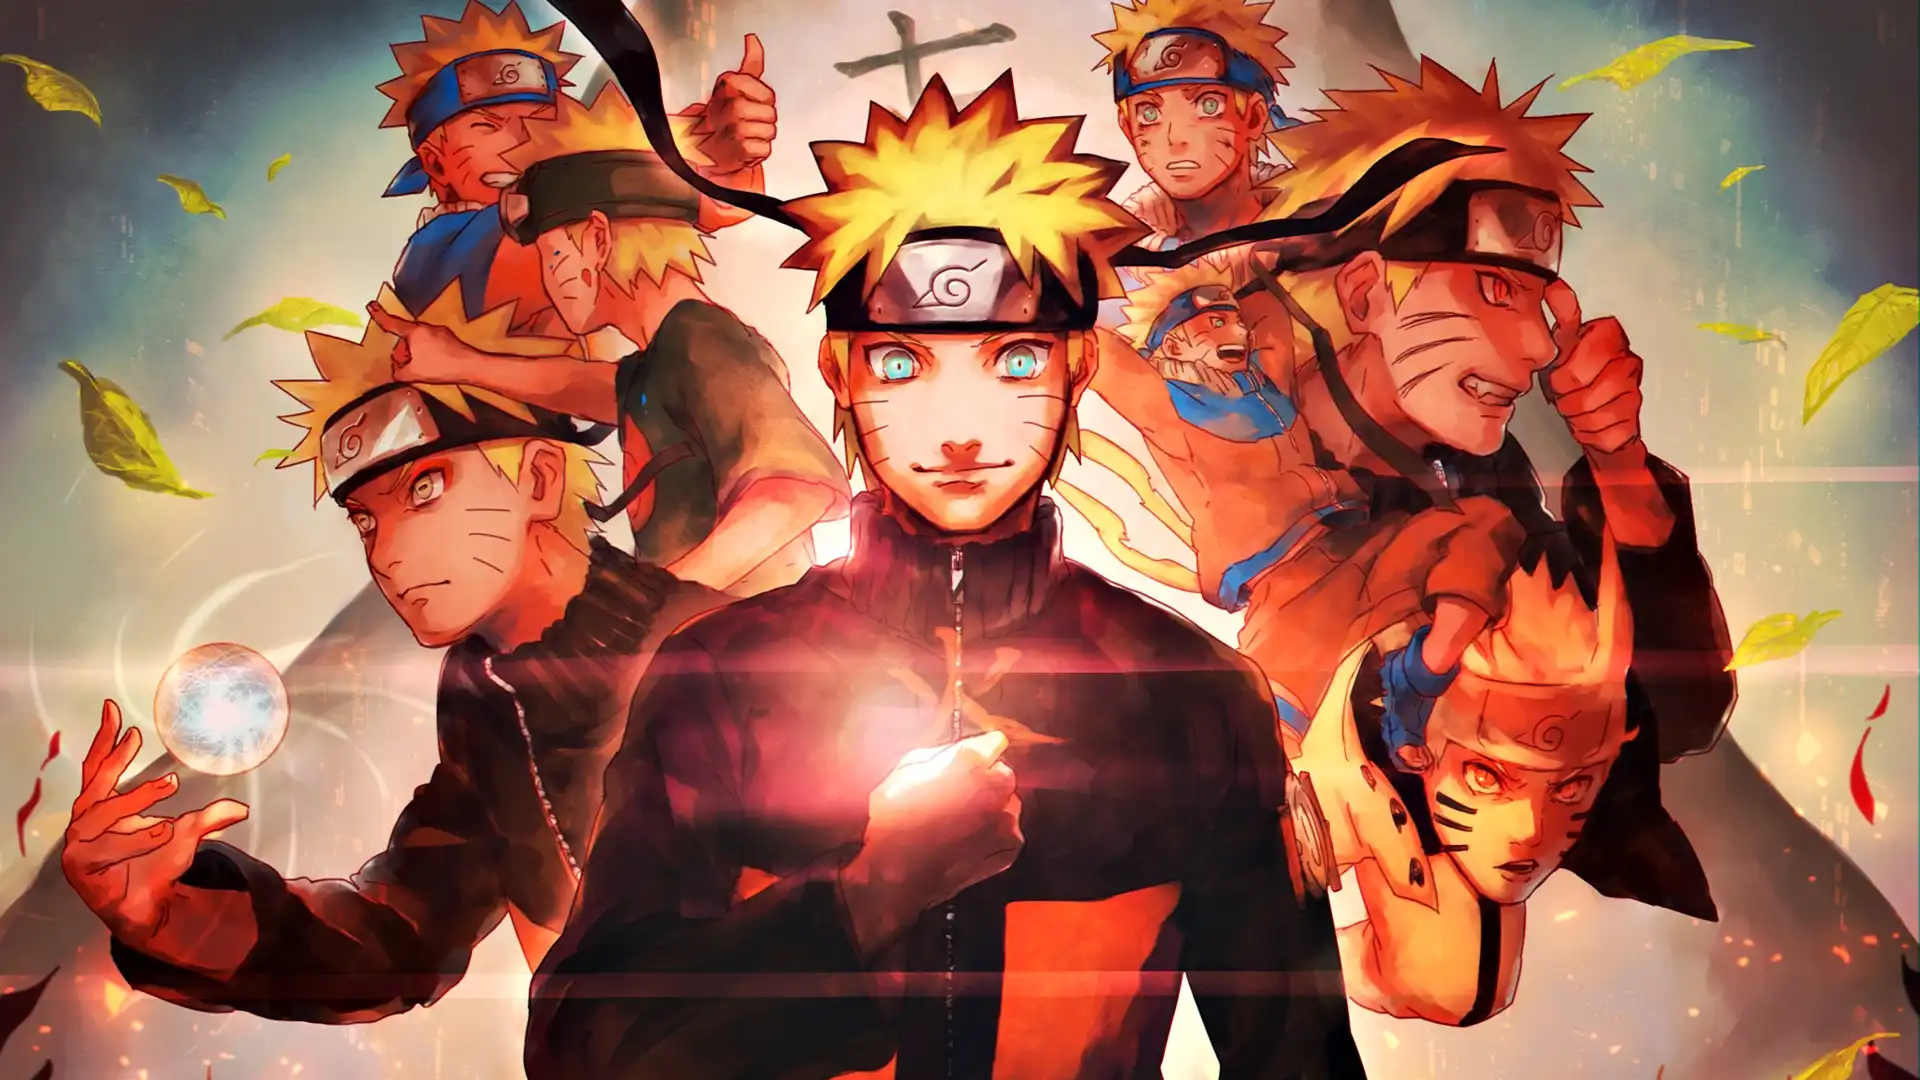 دانلود عکس ناروتو Naruto با کیفیت 4K و و رزولویشن بالا - کارماتوس